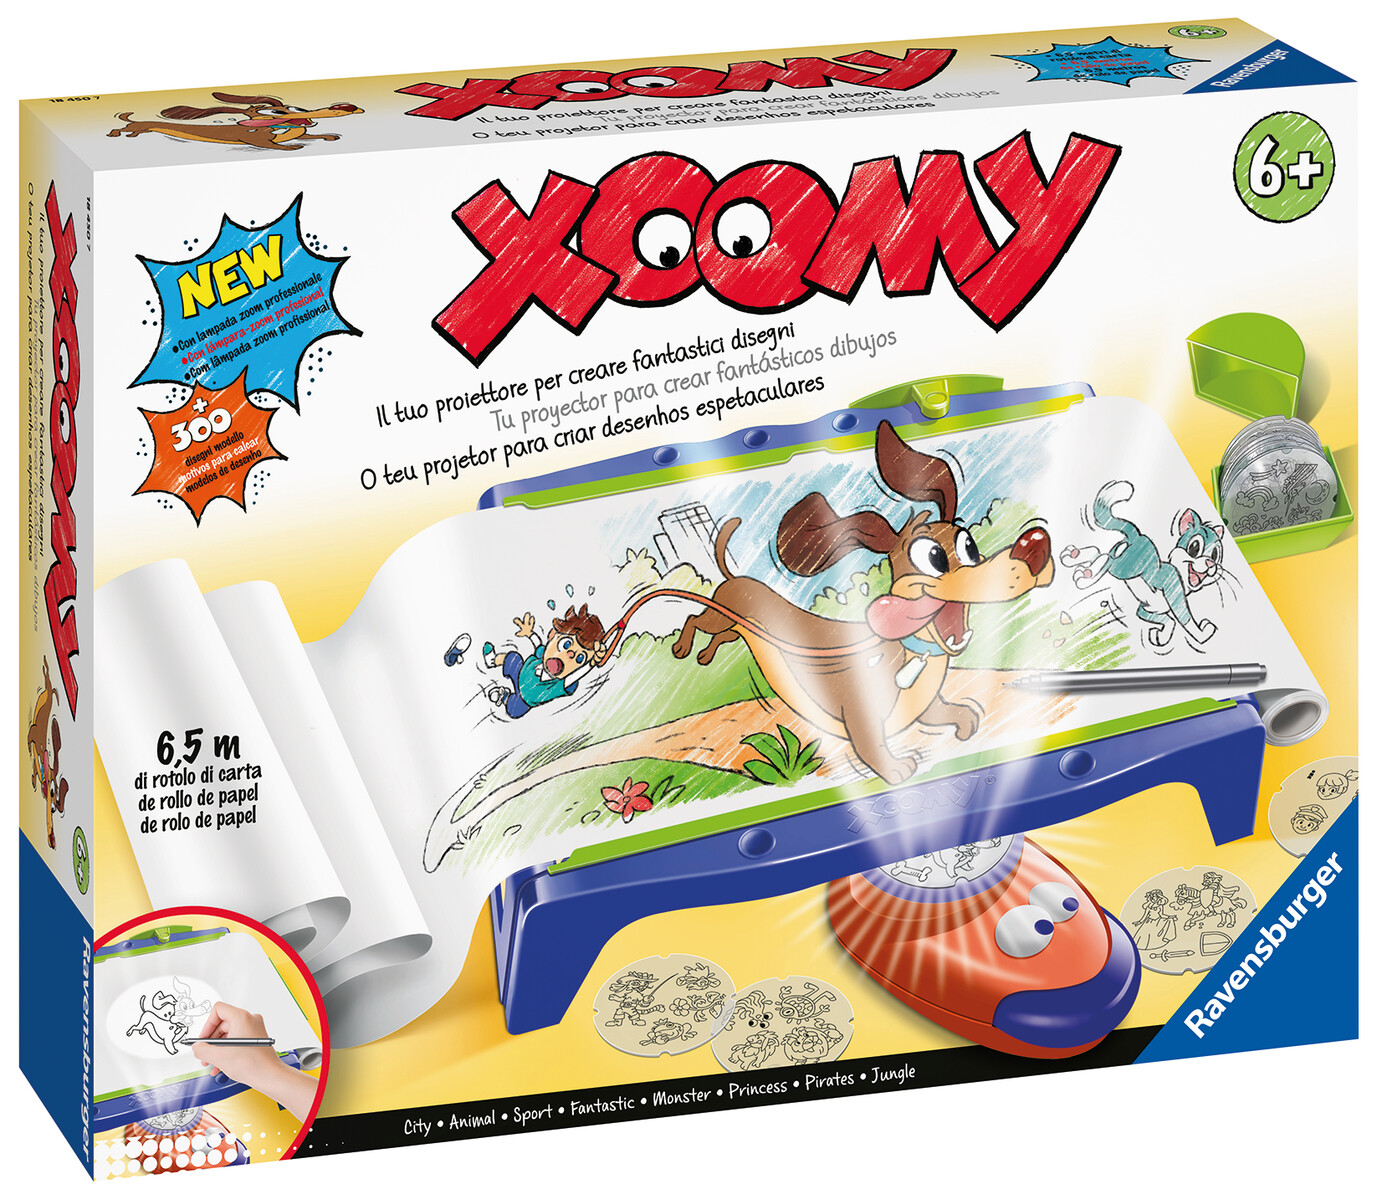 Ravensburger - xoomi maxi paper roll, tavolo da disegno con rotolo di carta e proiettore luminoso, 300 motivi illustrati in 72 pellicole, gioco creativo per bambini e bambine, 6+ anni - 